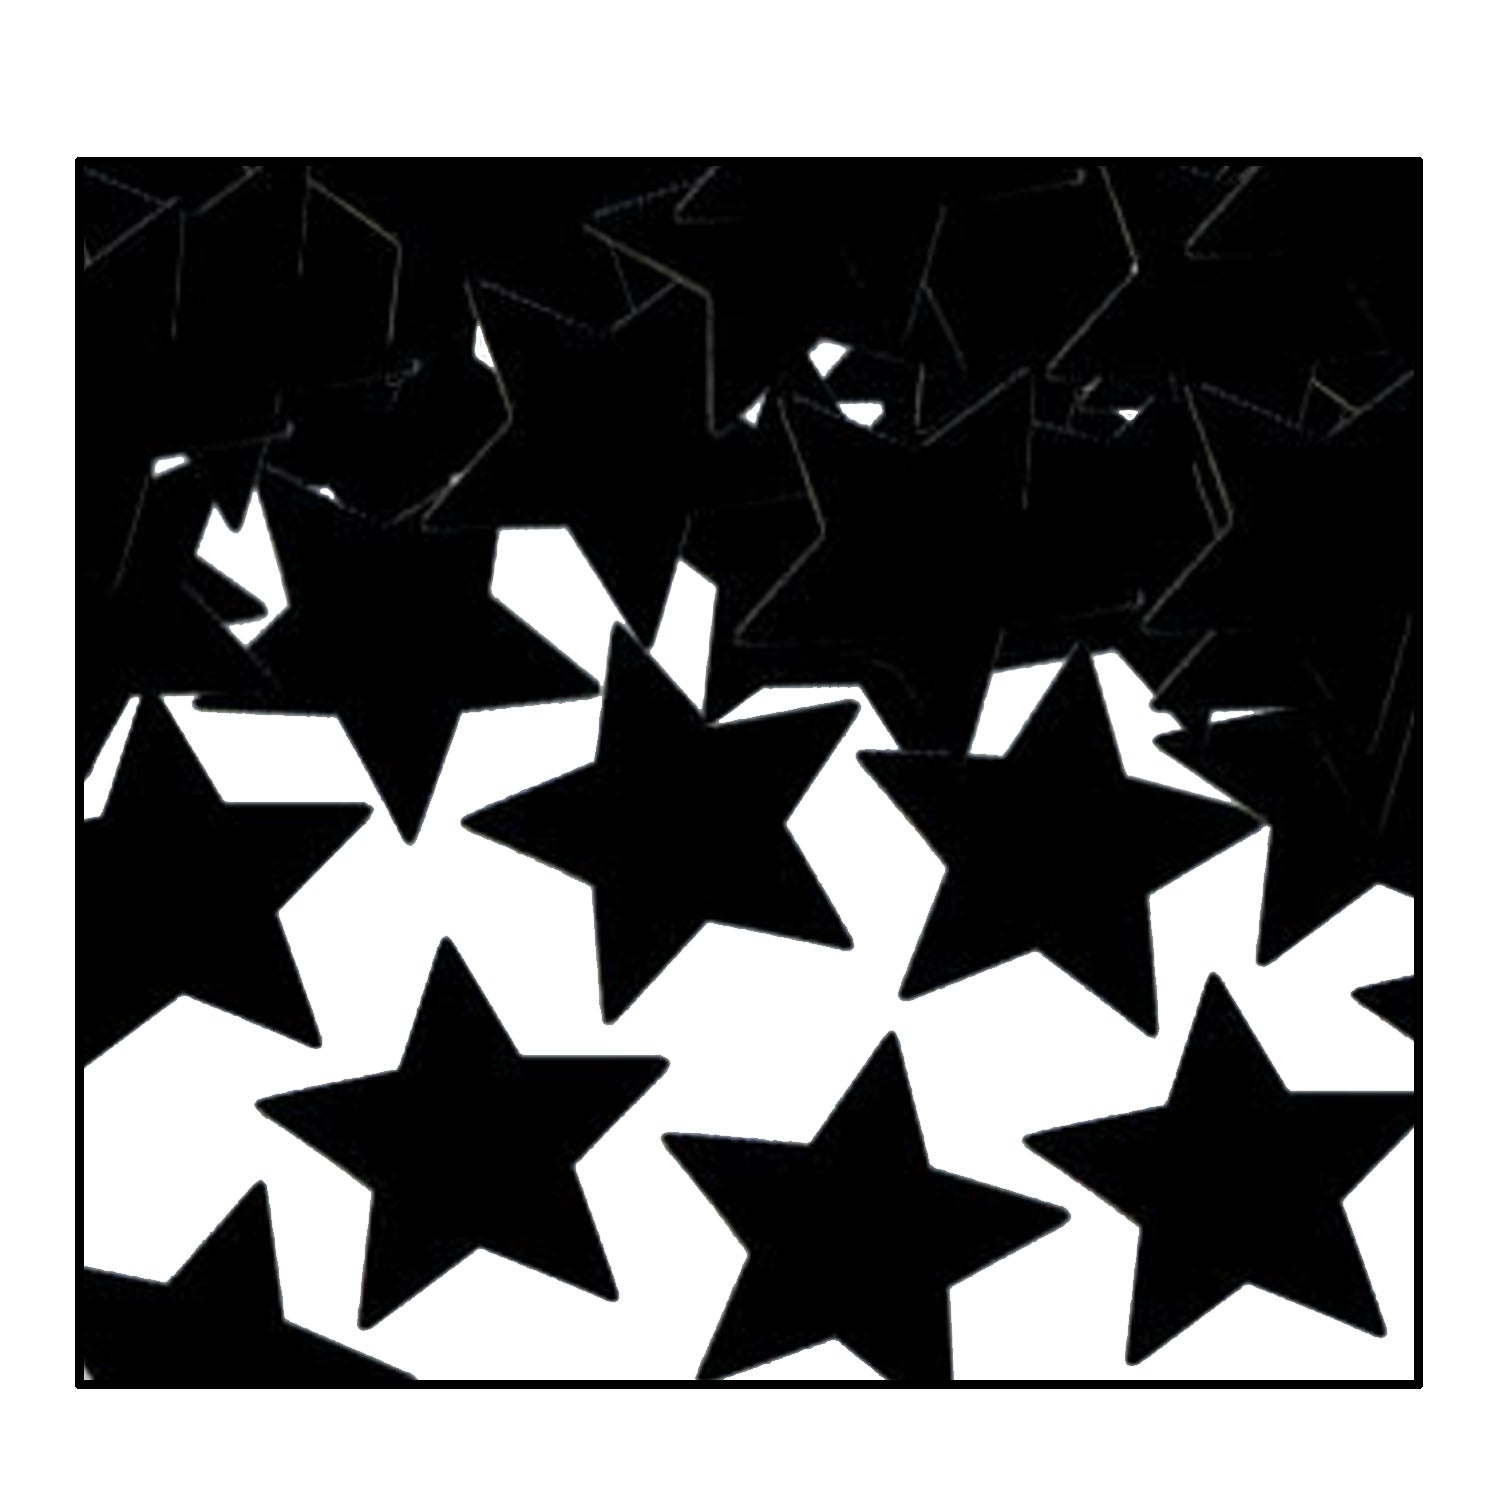 Black Star Confetti